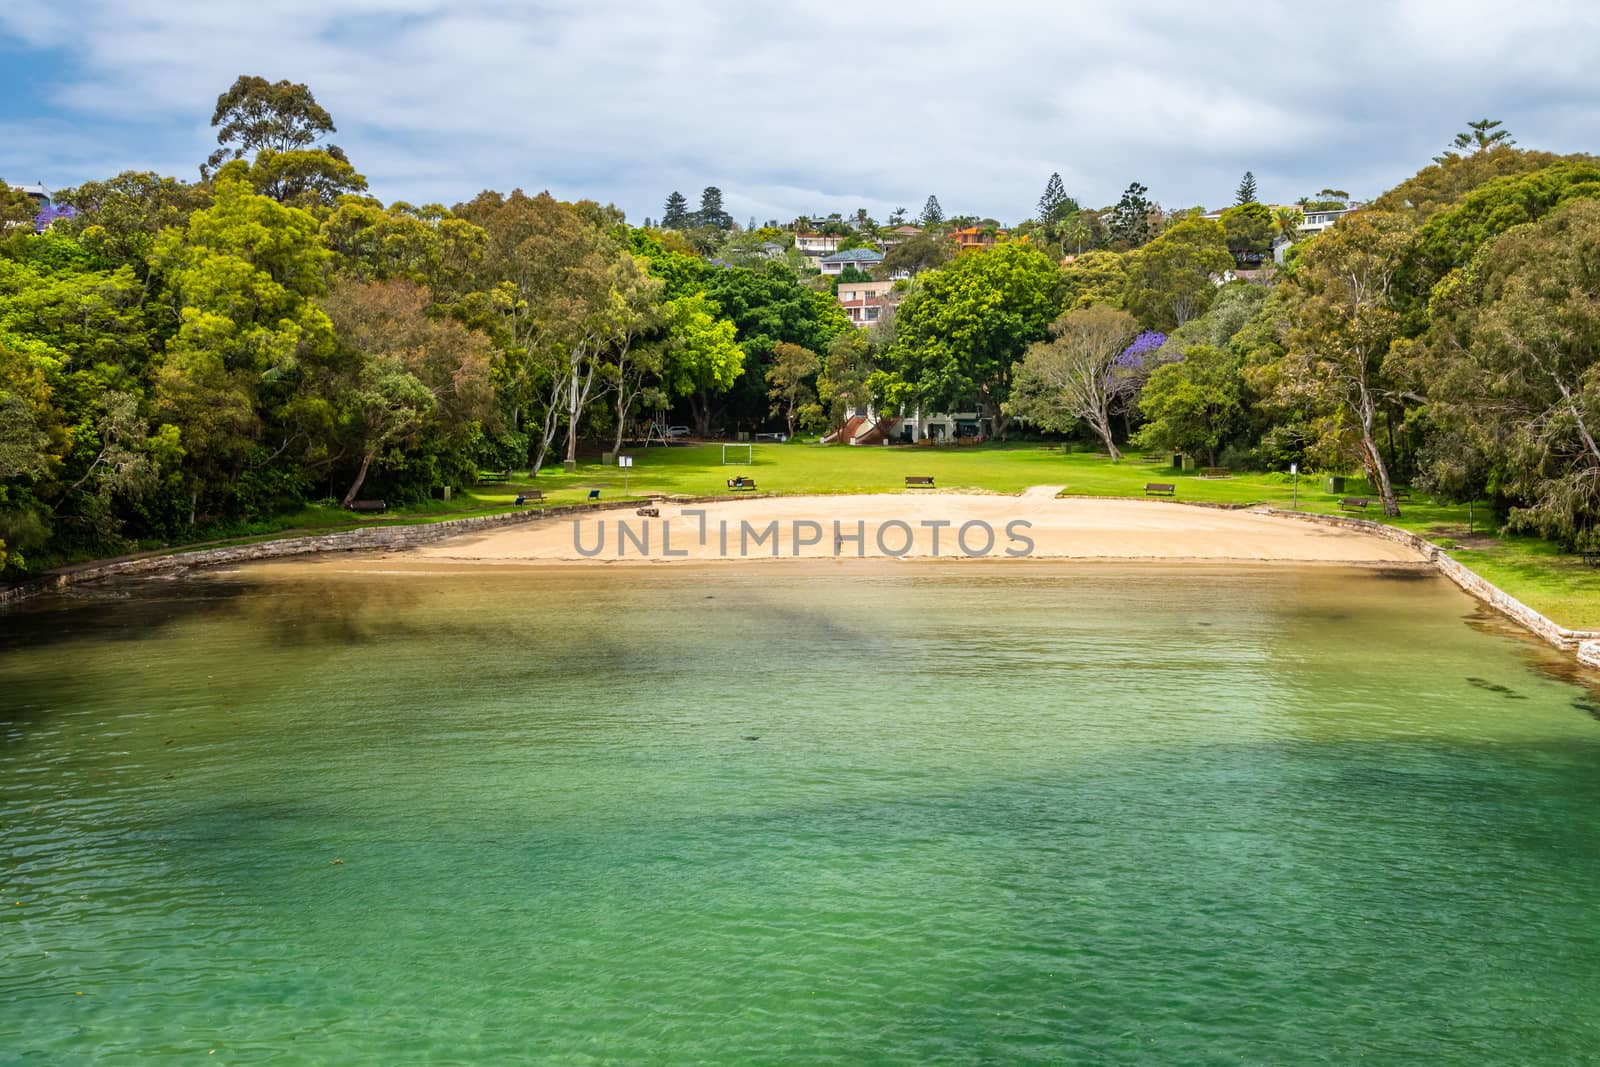 The green Parsley beach in Sydney, NSW Australia by mauricallari